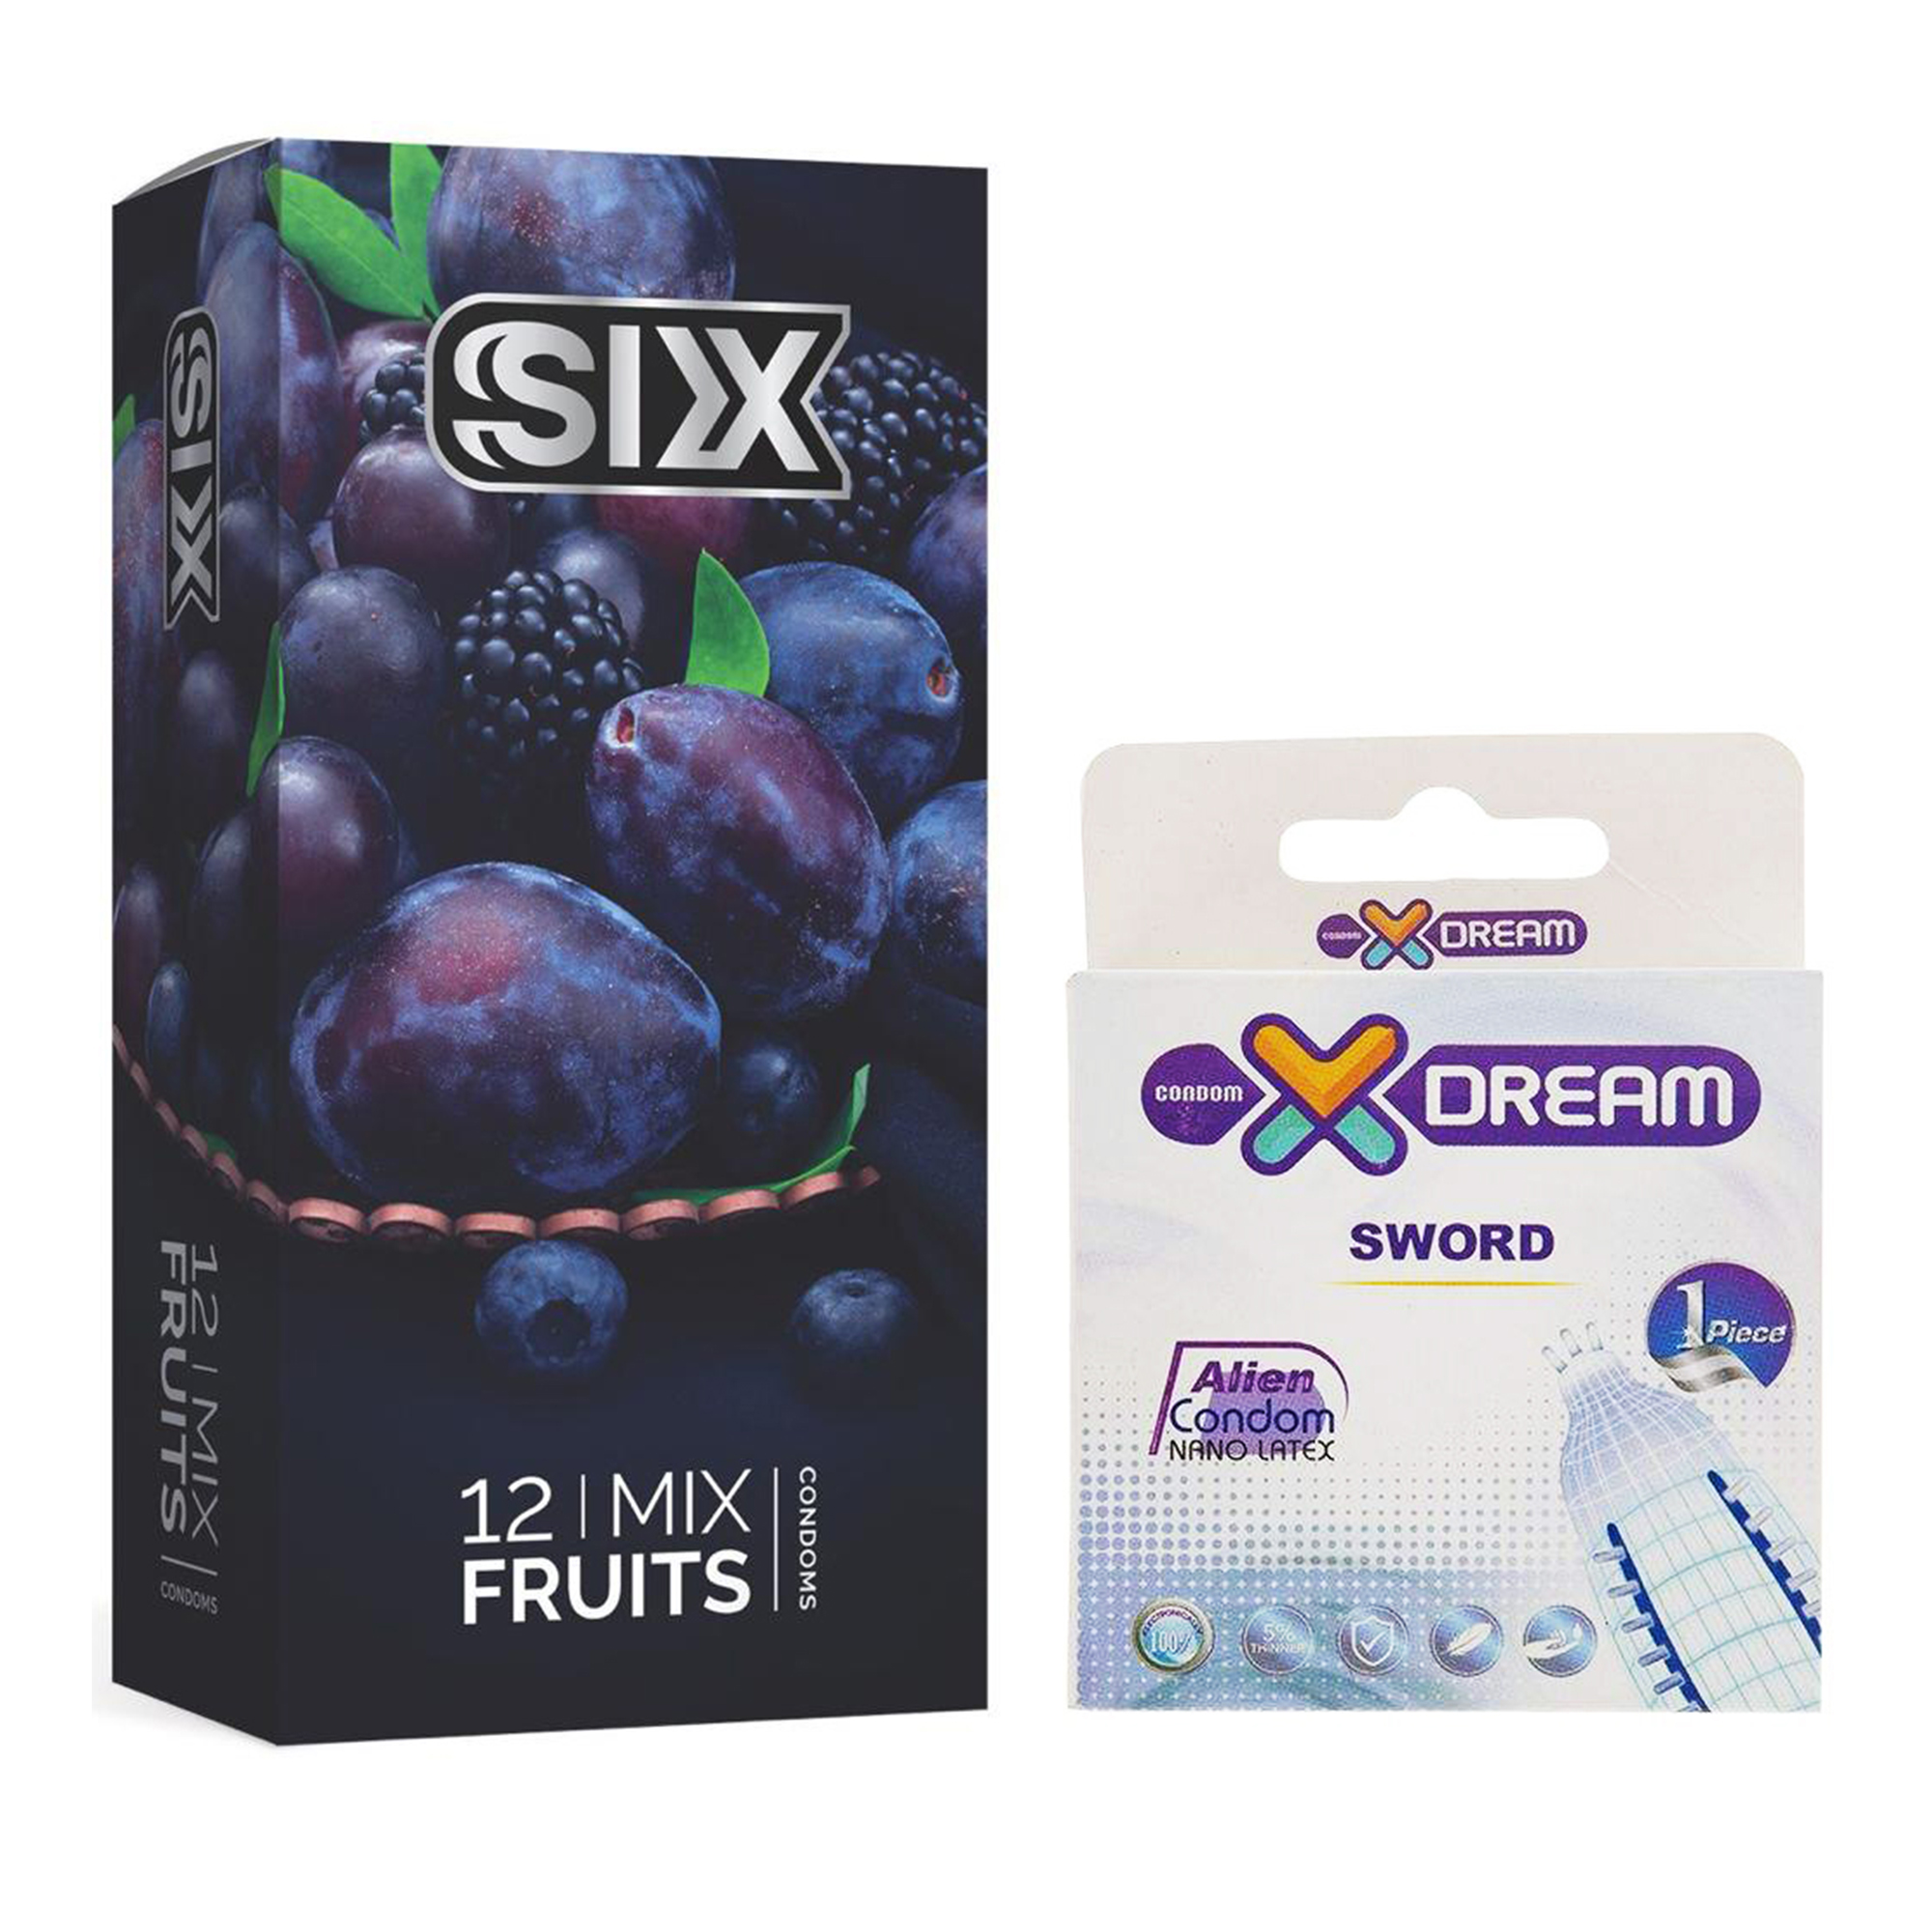 کاندوم سیکس مدل Mix Fruits بسته 12 عددی به همراه کاندوم ایکس دریم مدل Sword